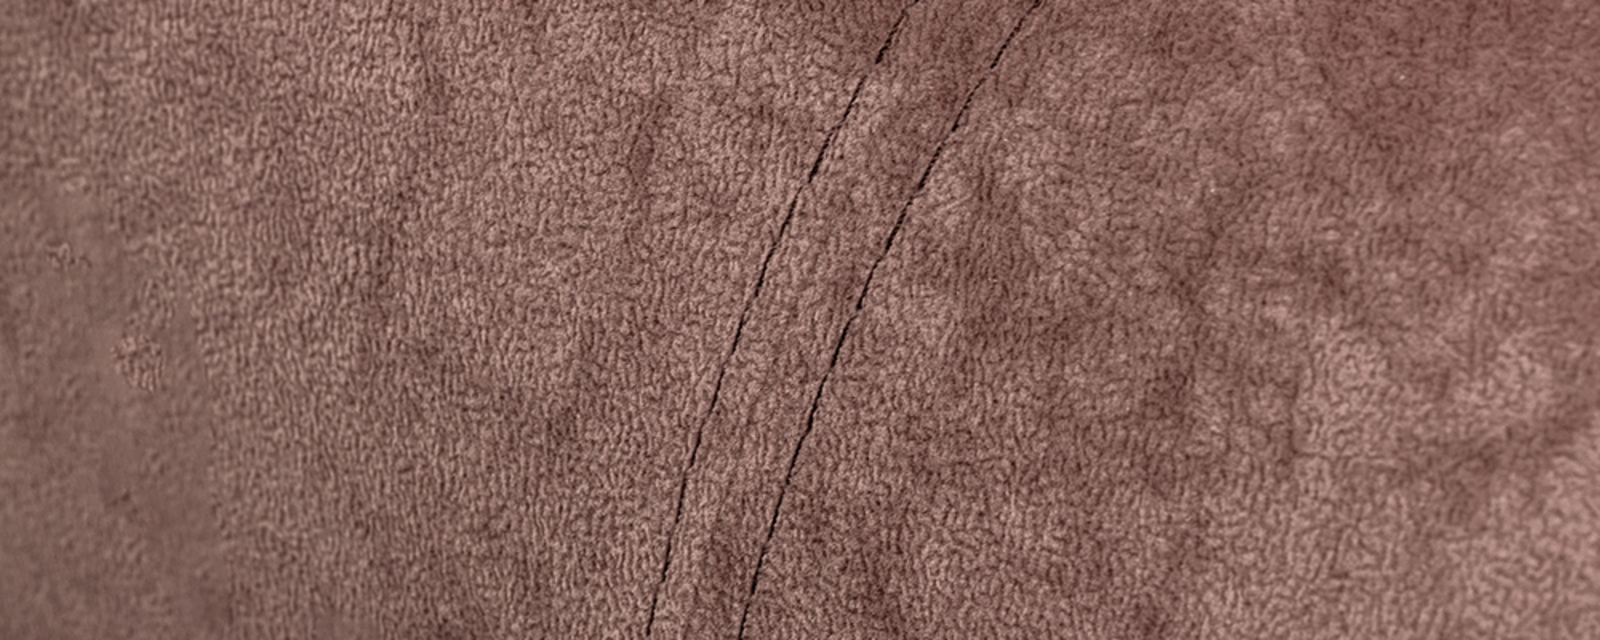 Диван тканевый угловой Лос-Анджелес Flok бежево-коричневый (Ткань)